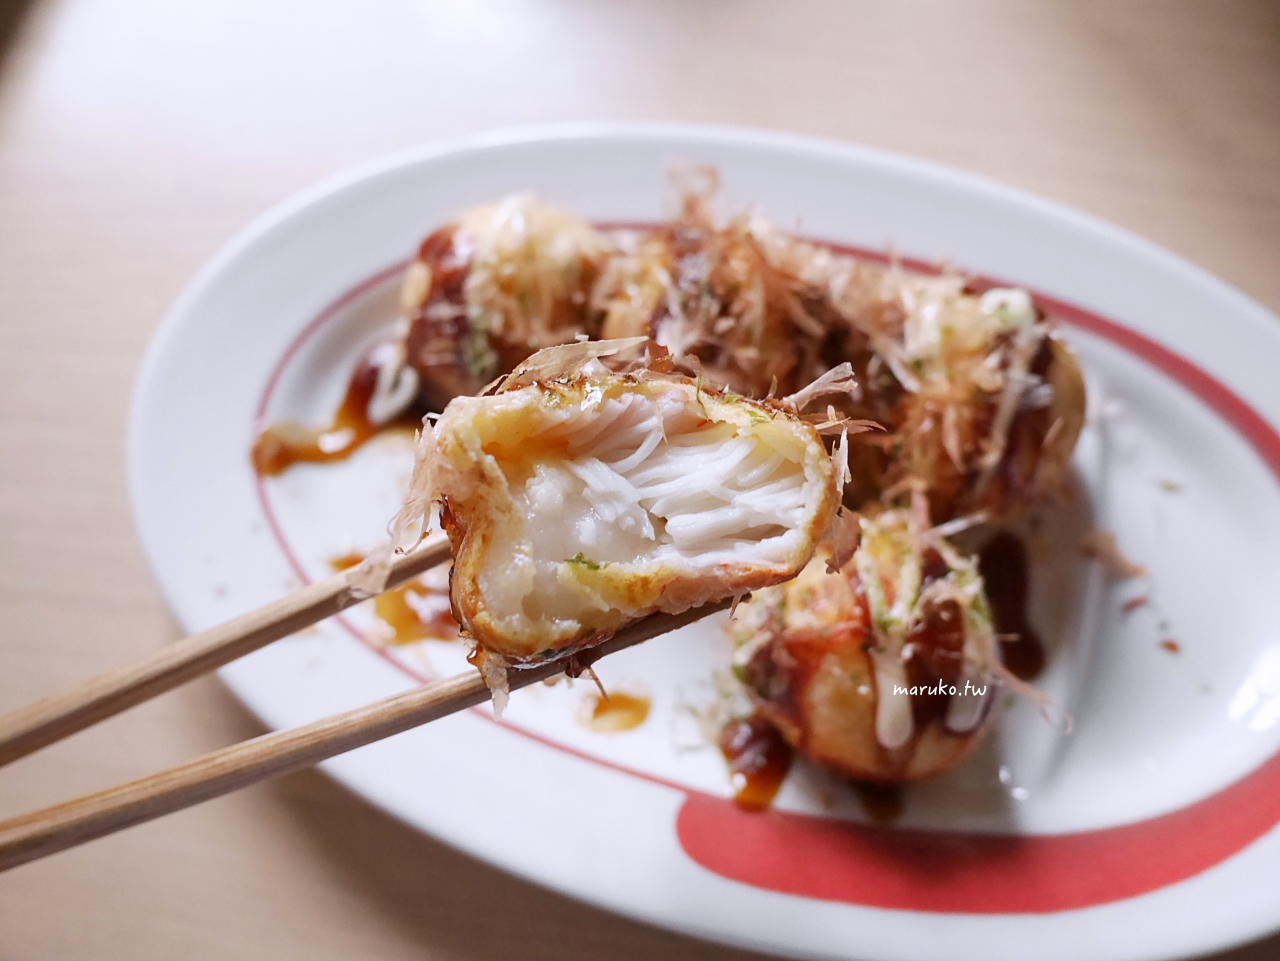 【食譜】蟹肉麻糬起司燒 章魚燒食材變化做法 日本麗克特電烤盤分享 @Maruko與美食有個約會